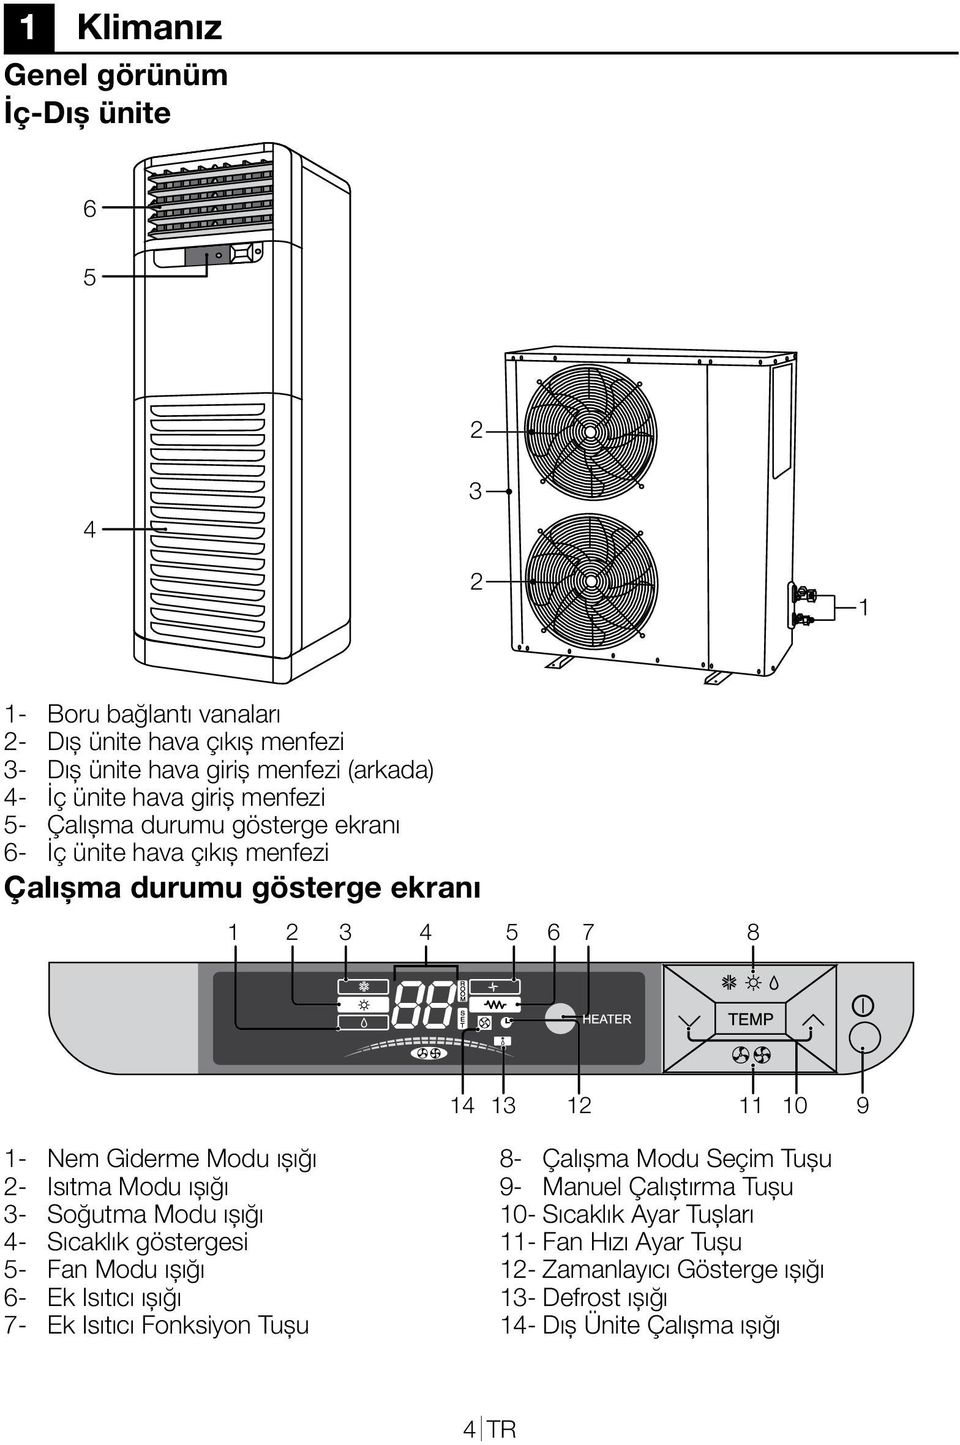 Modu ışığı 2- Isıtma Modu ışığı 3- Soğutma Modu ışığı 4- Sıcaklık göstergesi 5- Fan Modu ışığı 6- Ek Isıtıcı ışığı 7- Ek Isıtıcı Fonksiyon Tuşu 8- Çalışma Modu